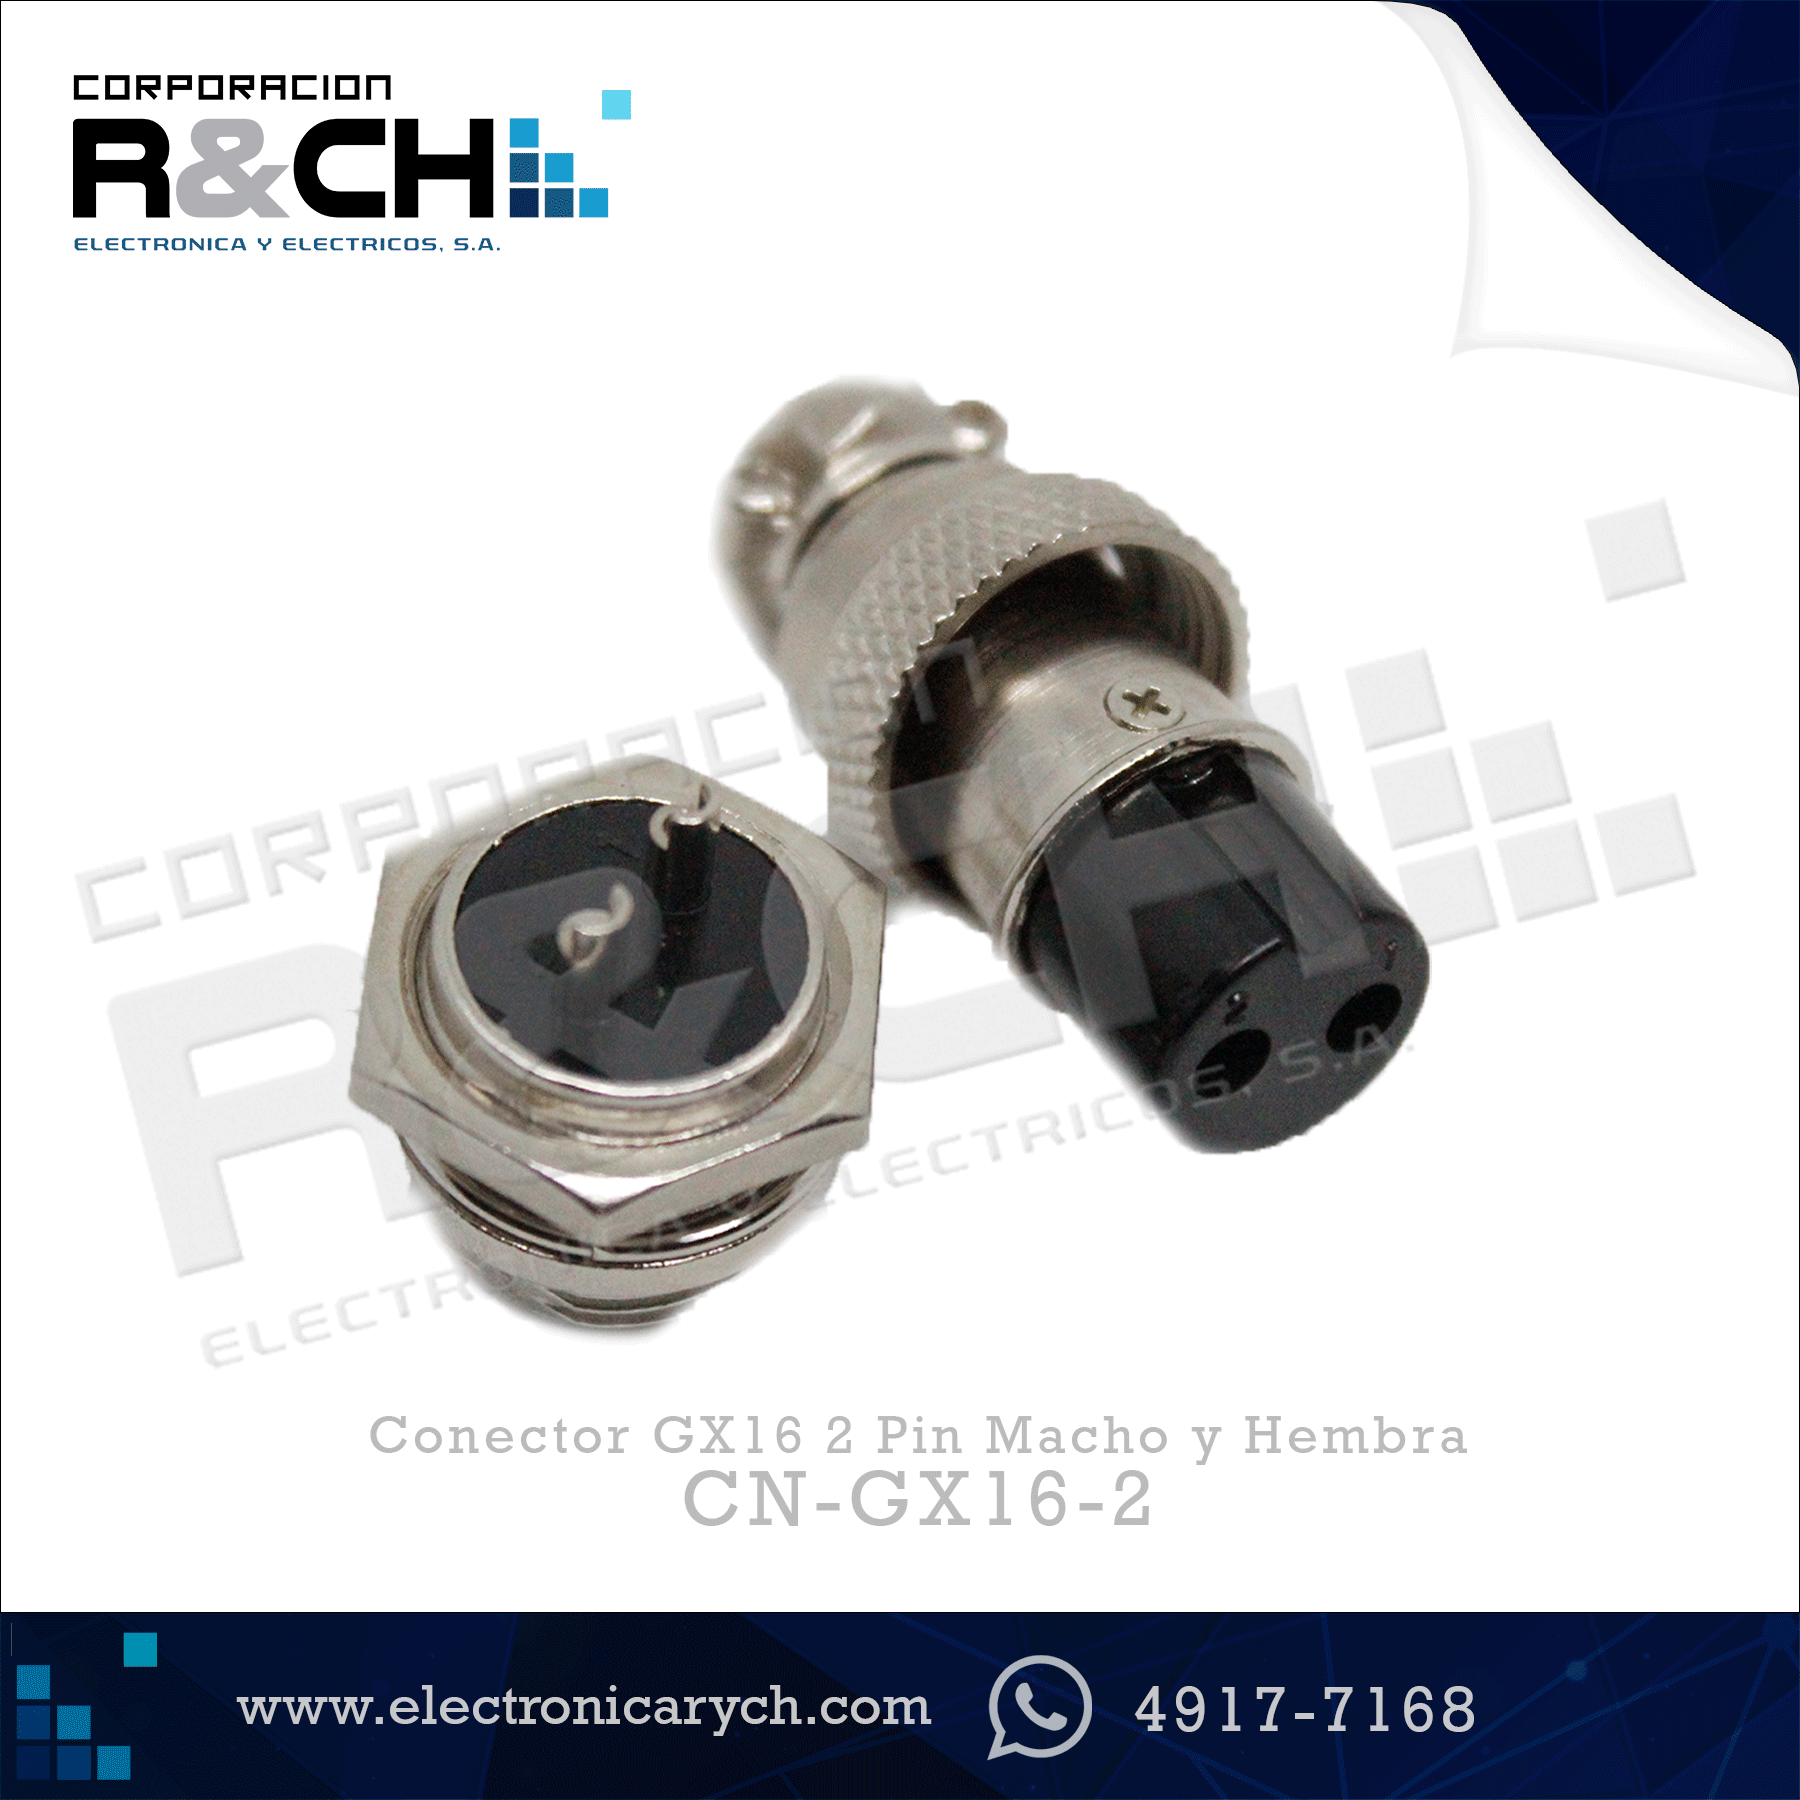 CN-GX16-2 Conector GX16 2 Pin Macho y Hembra